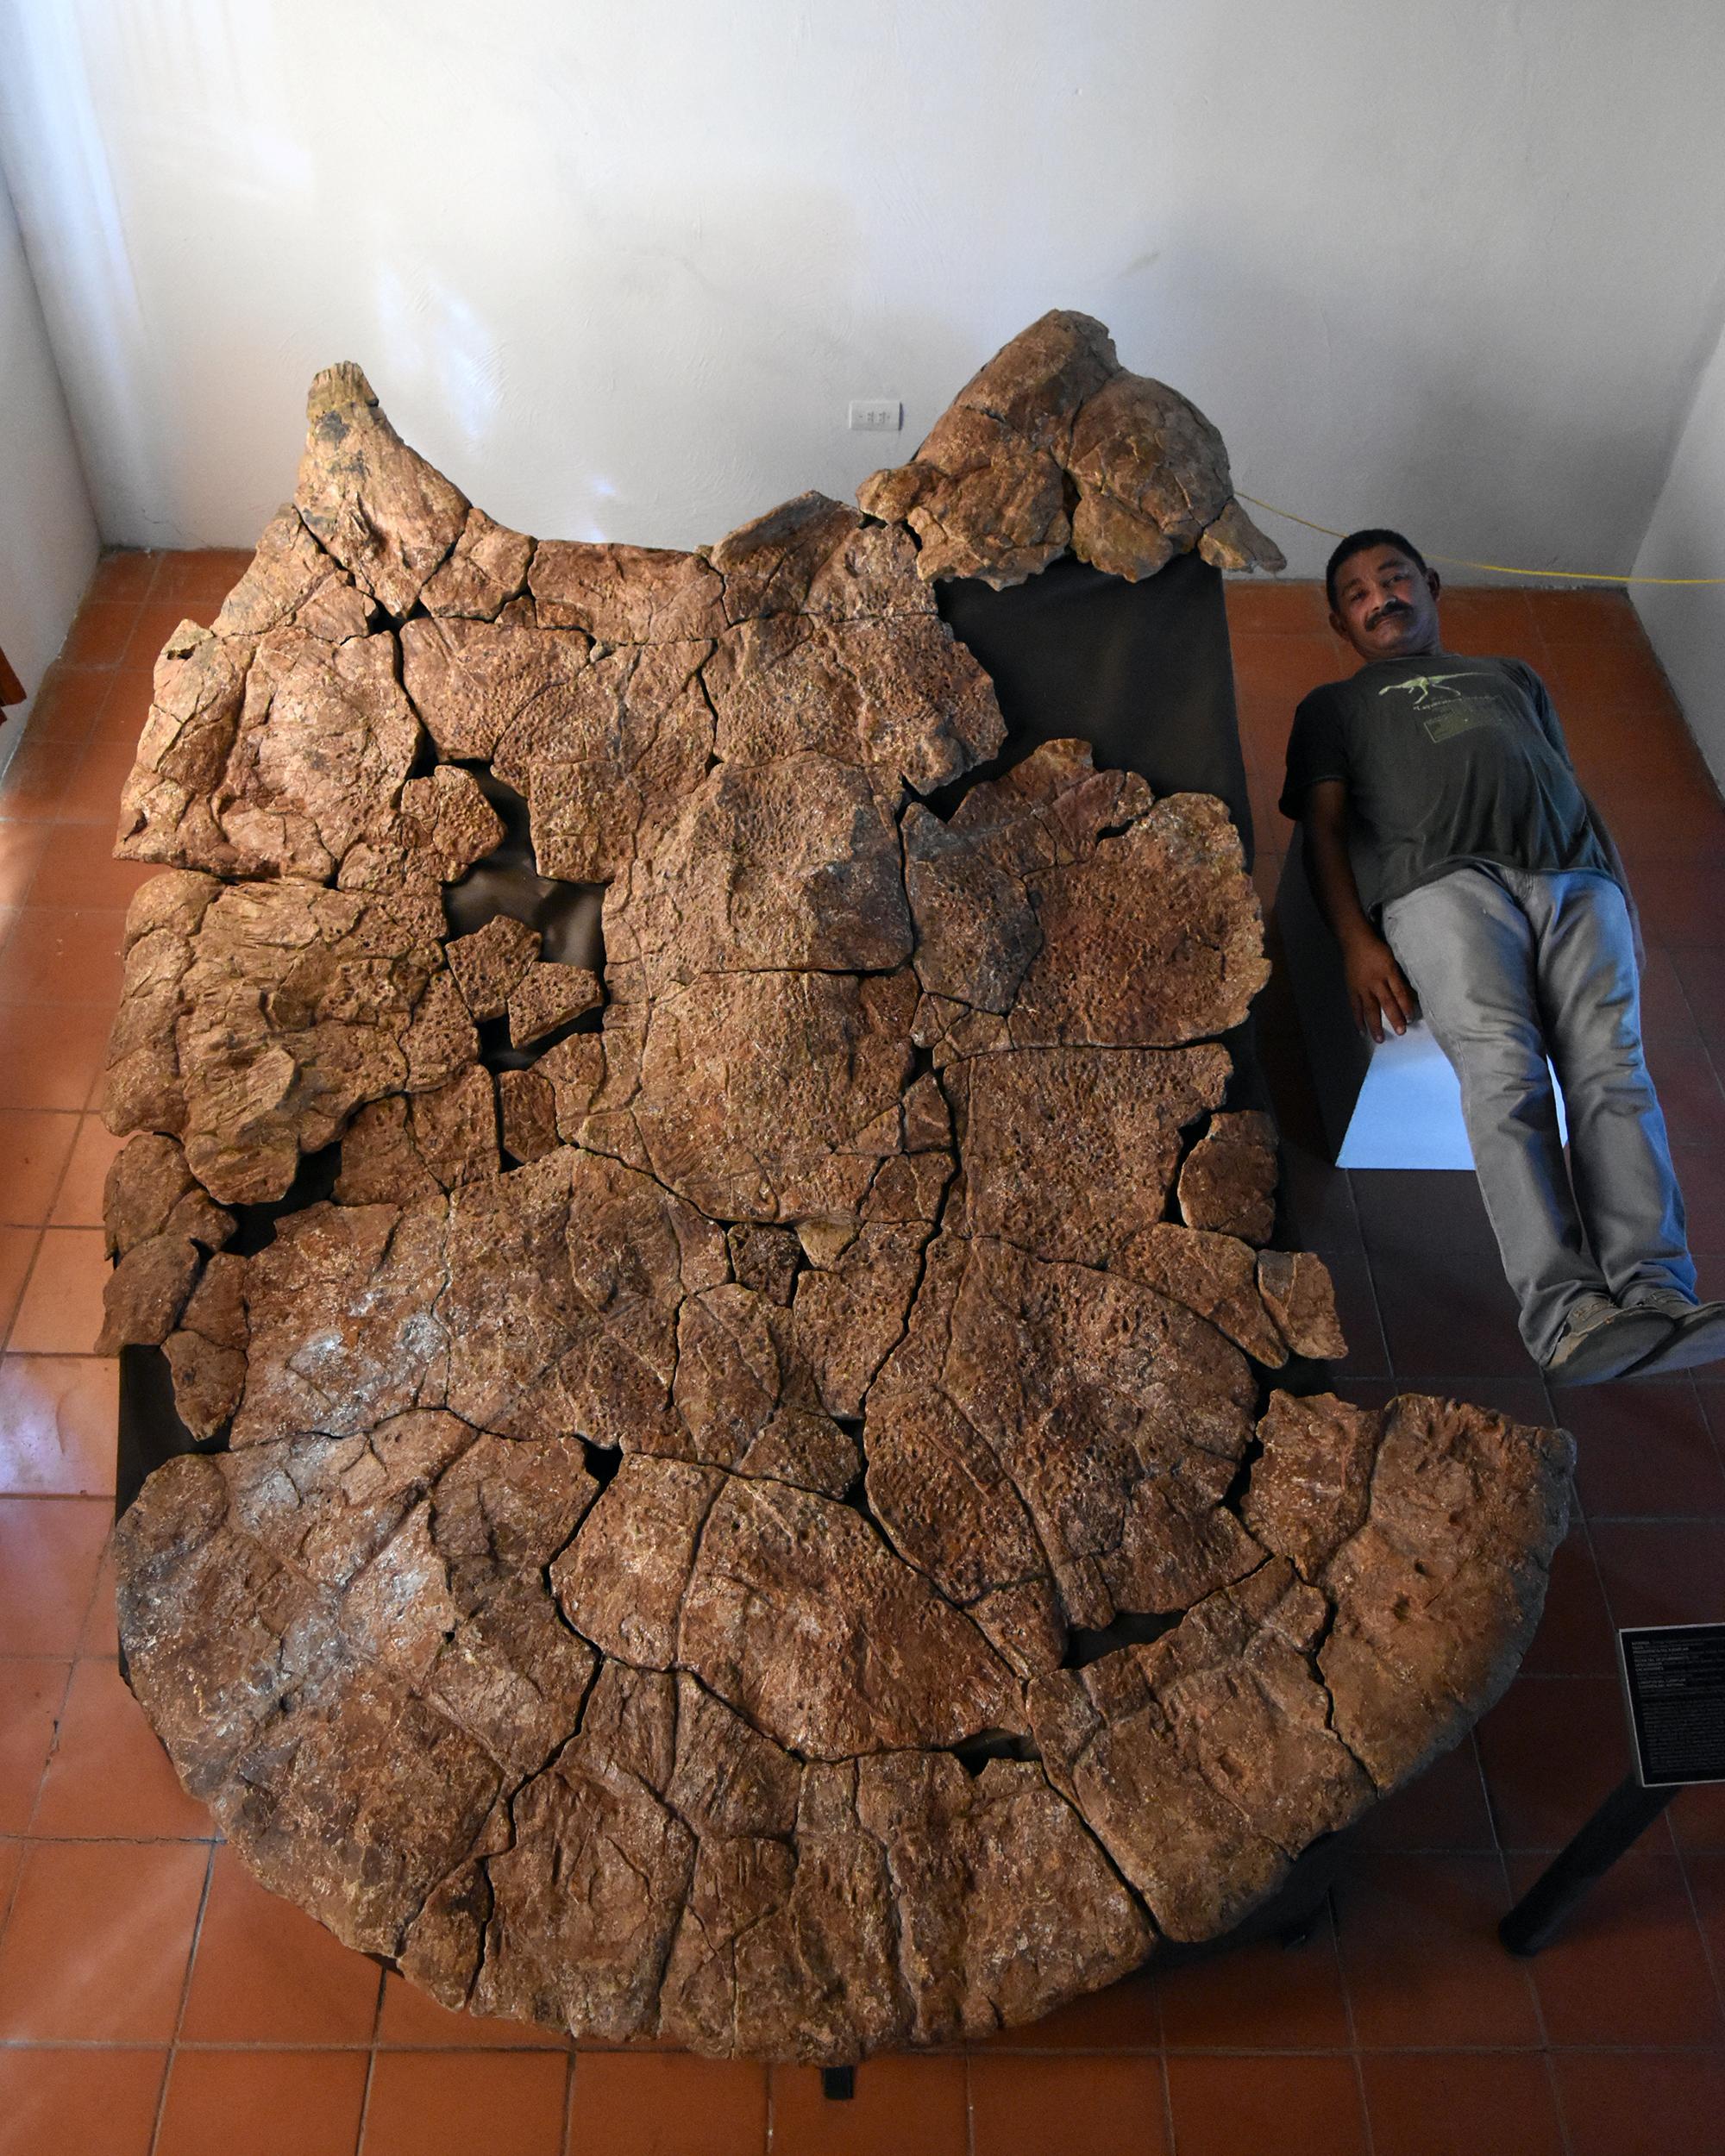 Un paléontologue prend la pose avec une carapace de Stupendemys geographicus au Venezuela. [University of Zurich - Edwin Cadena]